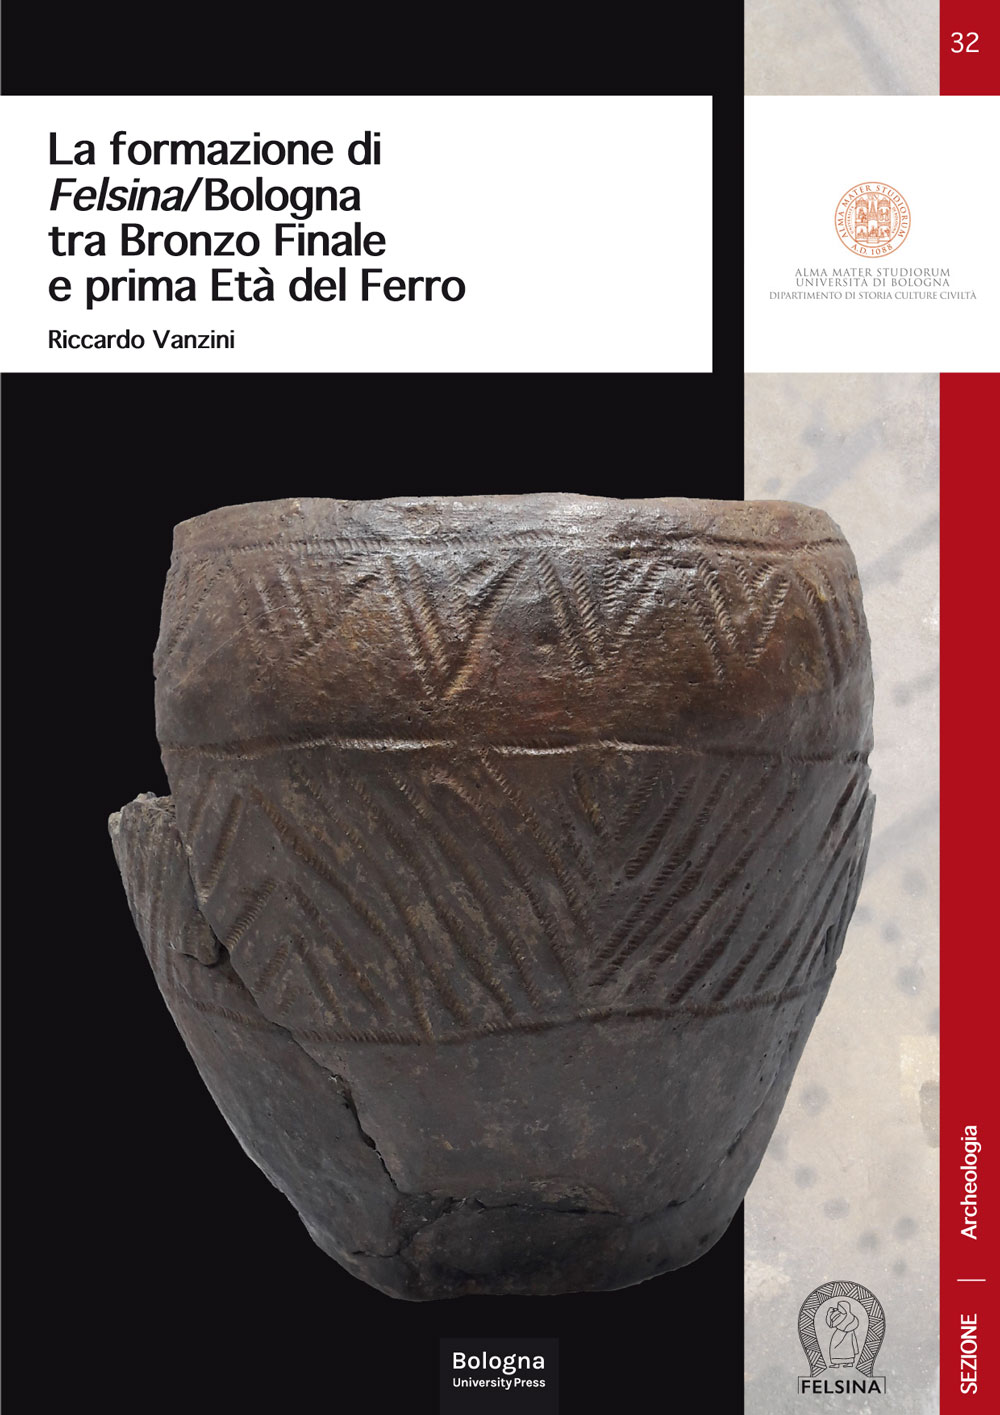 32. La formazione di Felsina/Bologna tra Bronzo Finale e prima Età del Ferro - Bologna University Press